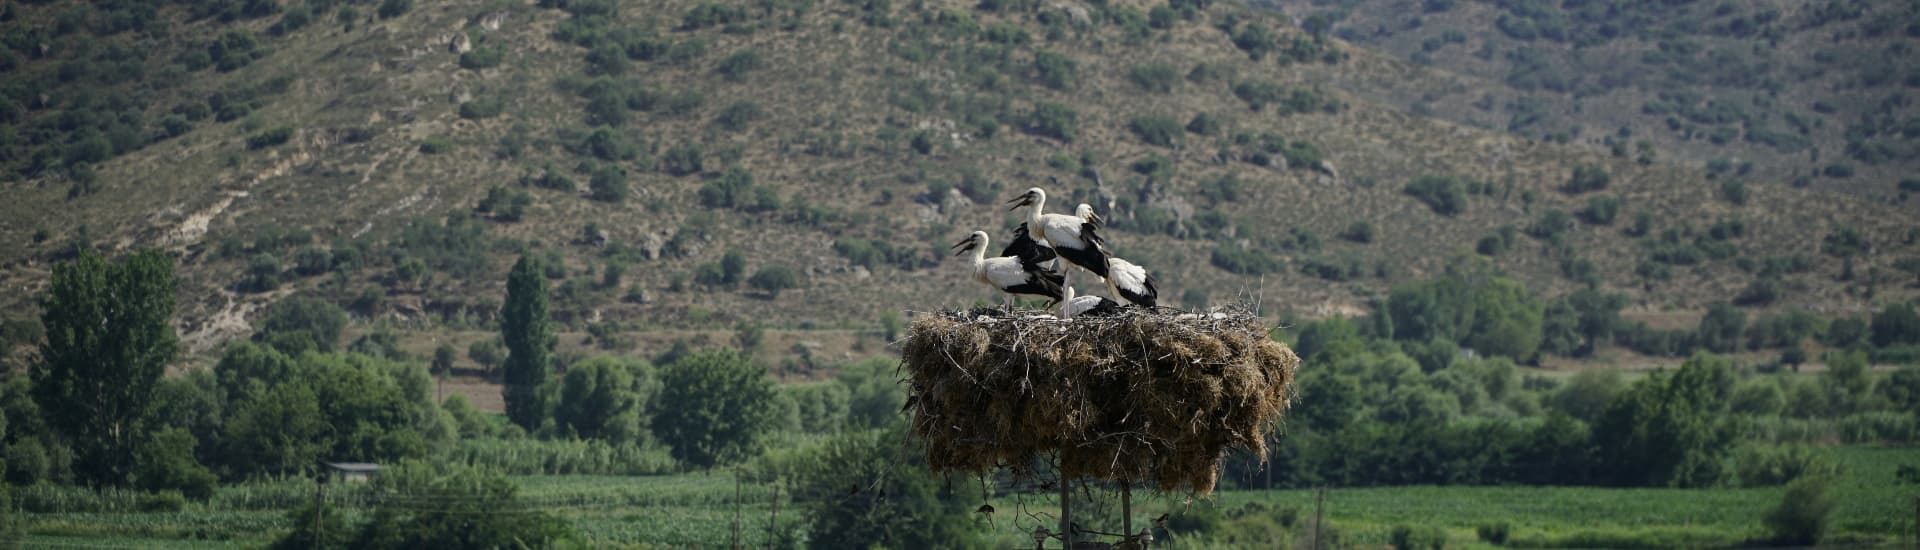 New Nest for Storks